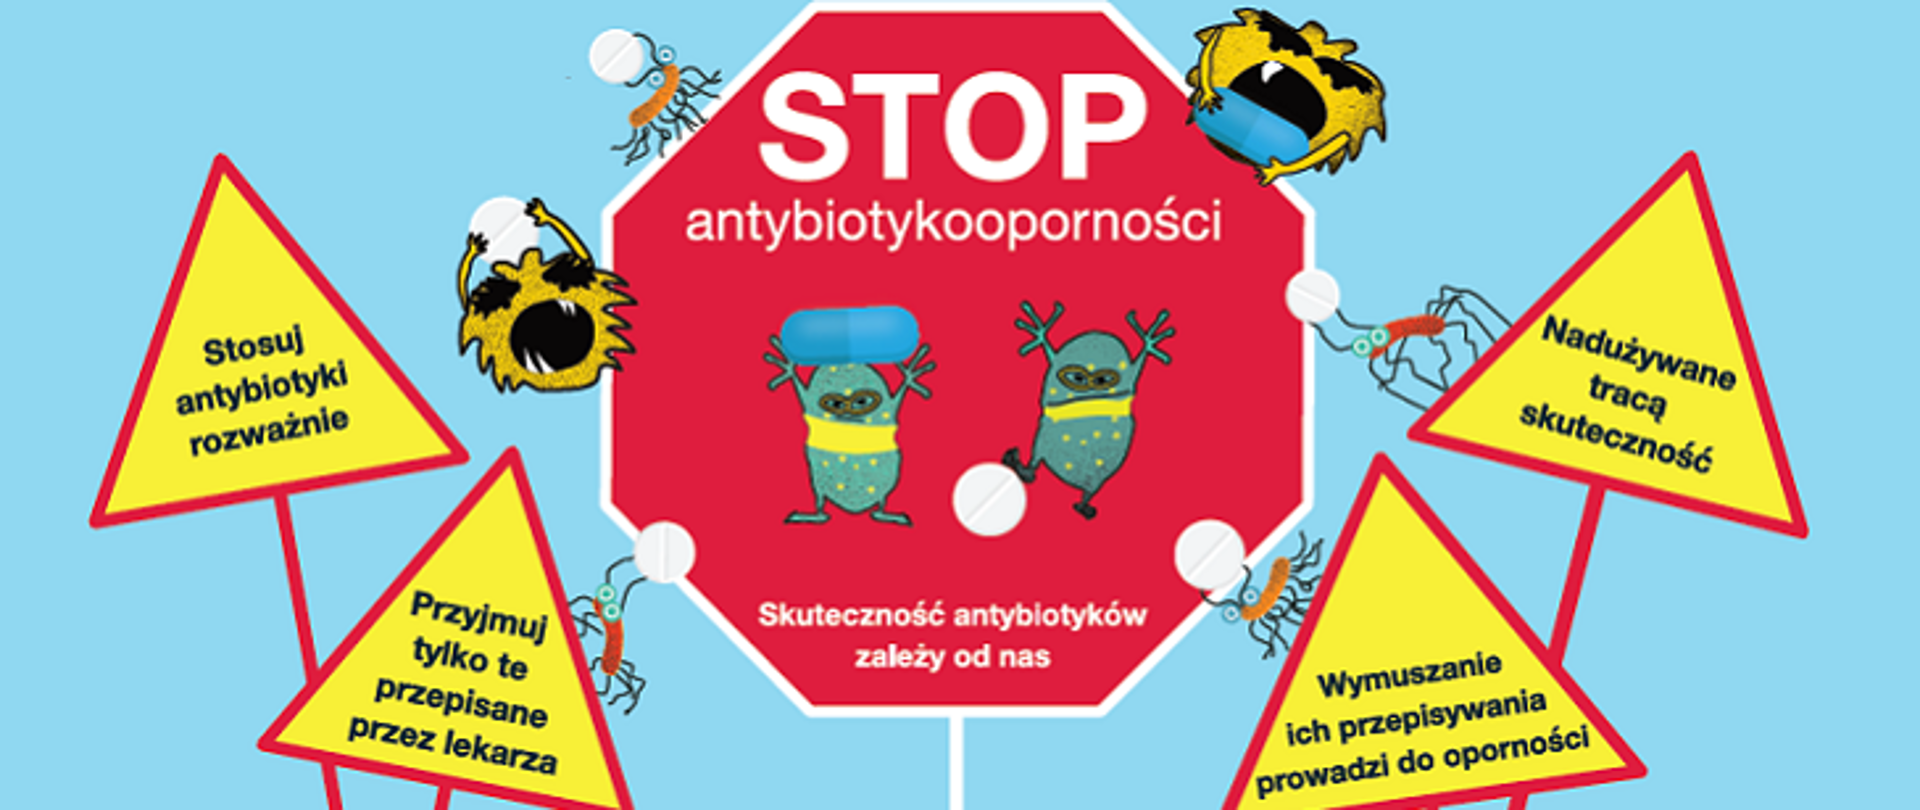 Europejski Dzień Wiedzy o Antybiotykach oraz Światowy Tydzień Wiedzy o Antybiotykach